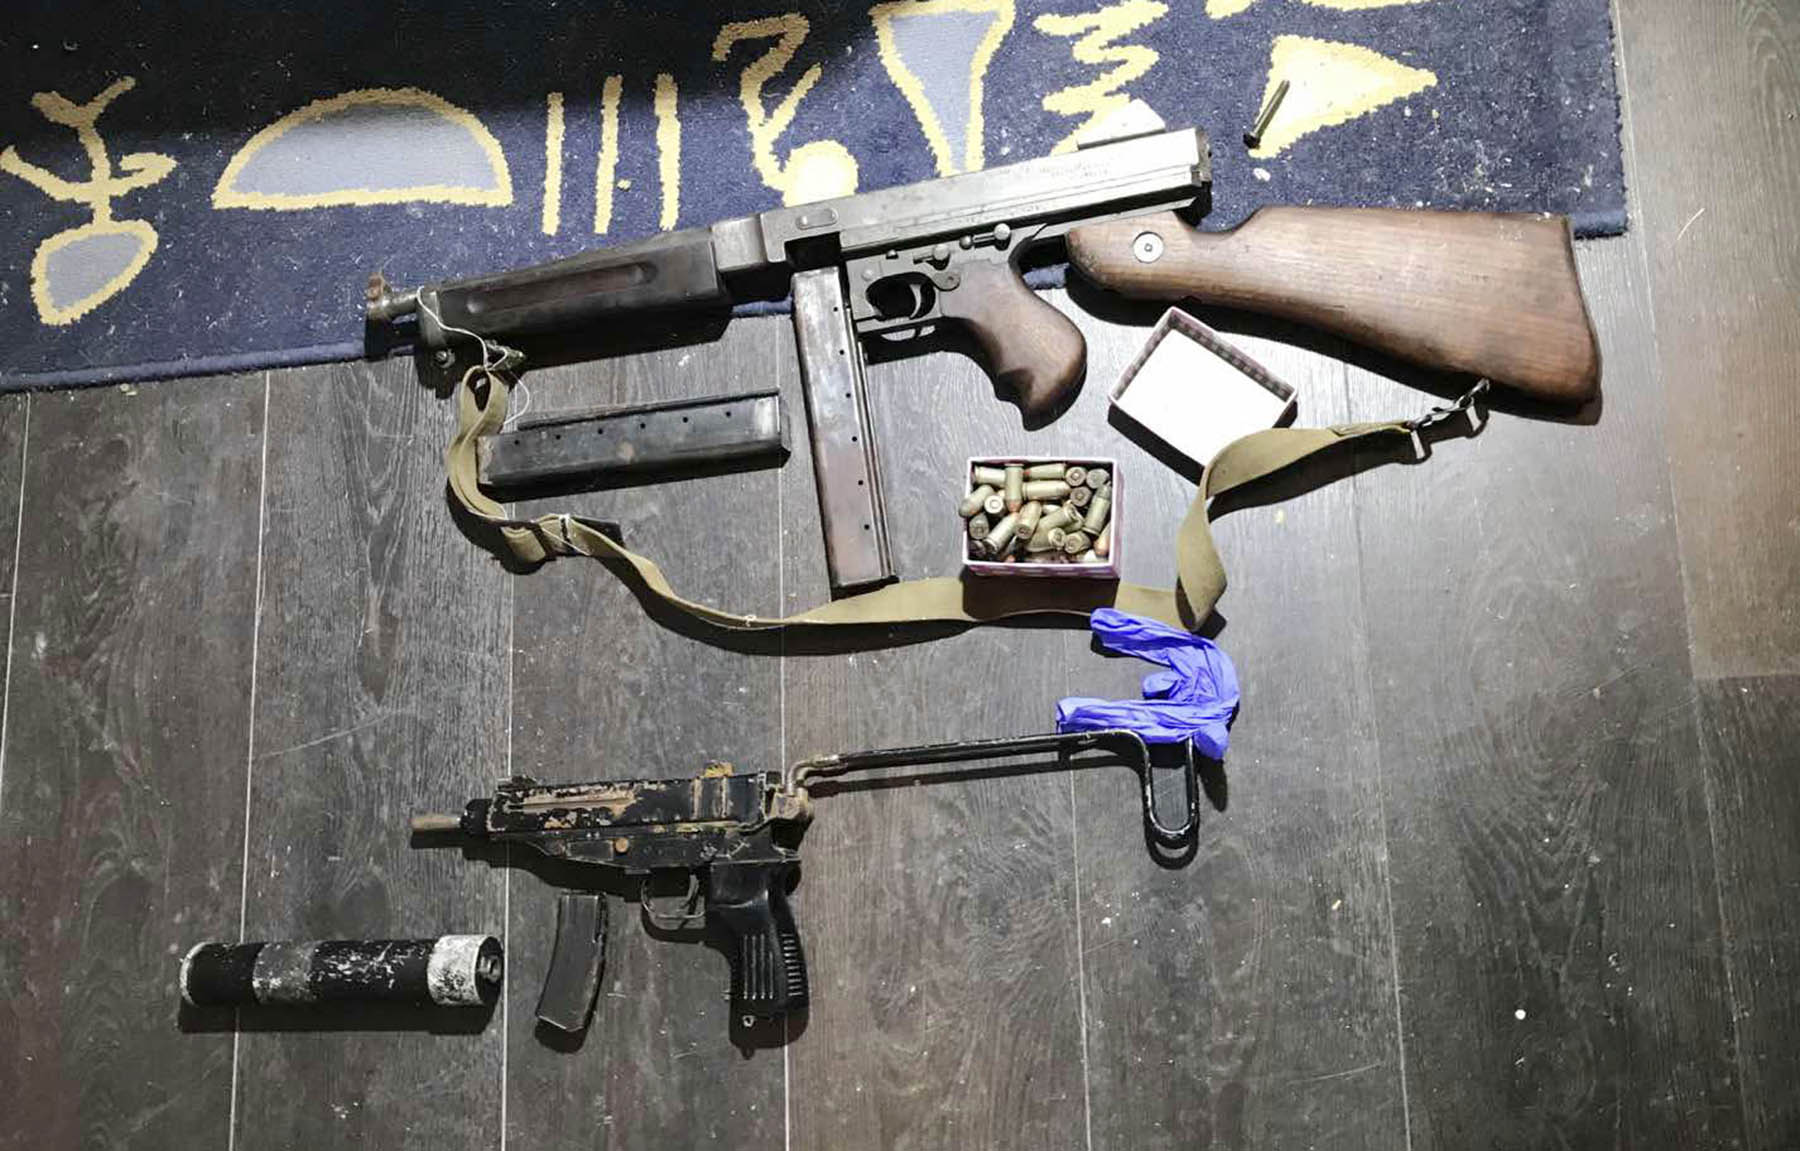 Ухапшене две особе и заплењени спид, екстази, кофеин, пиштољи, аутоматска пушка и муниција различитог калибра